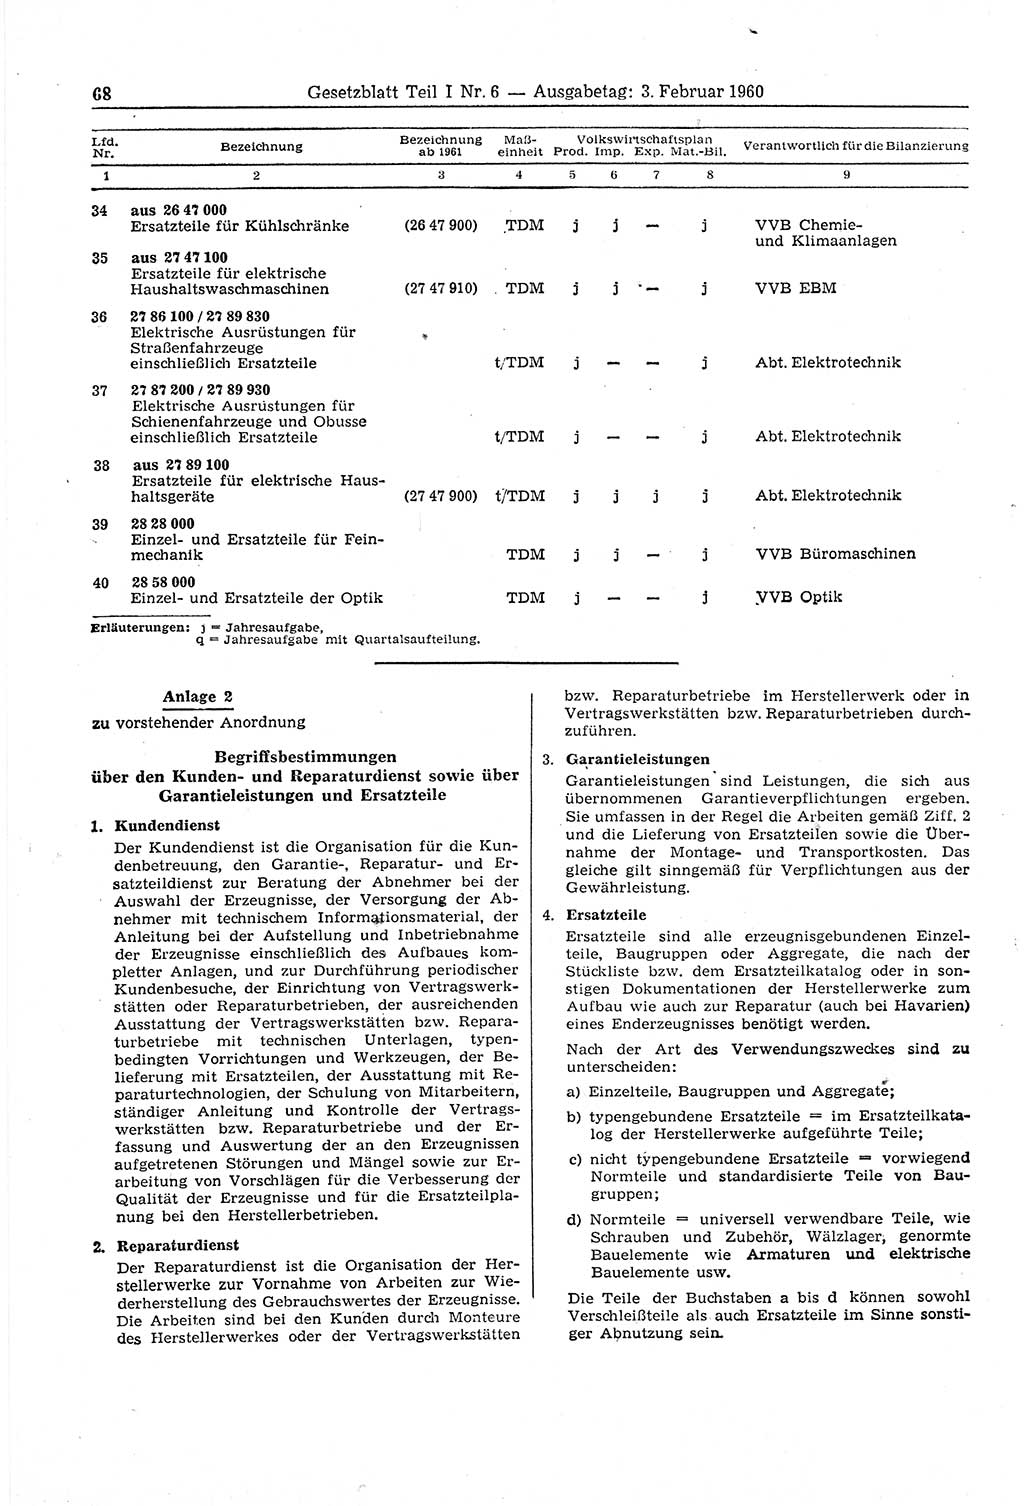 Gesetzblatt (GBl.) der Deutschen Demokratischen Republik (DDR) Teil Ⅰ 1960, Seite 68 (GBl. DDR Ⅰ 1960, S. 68)